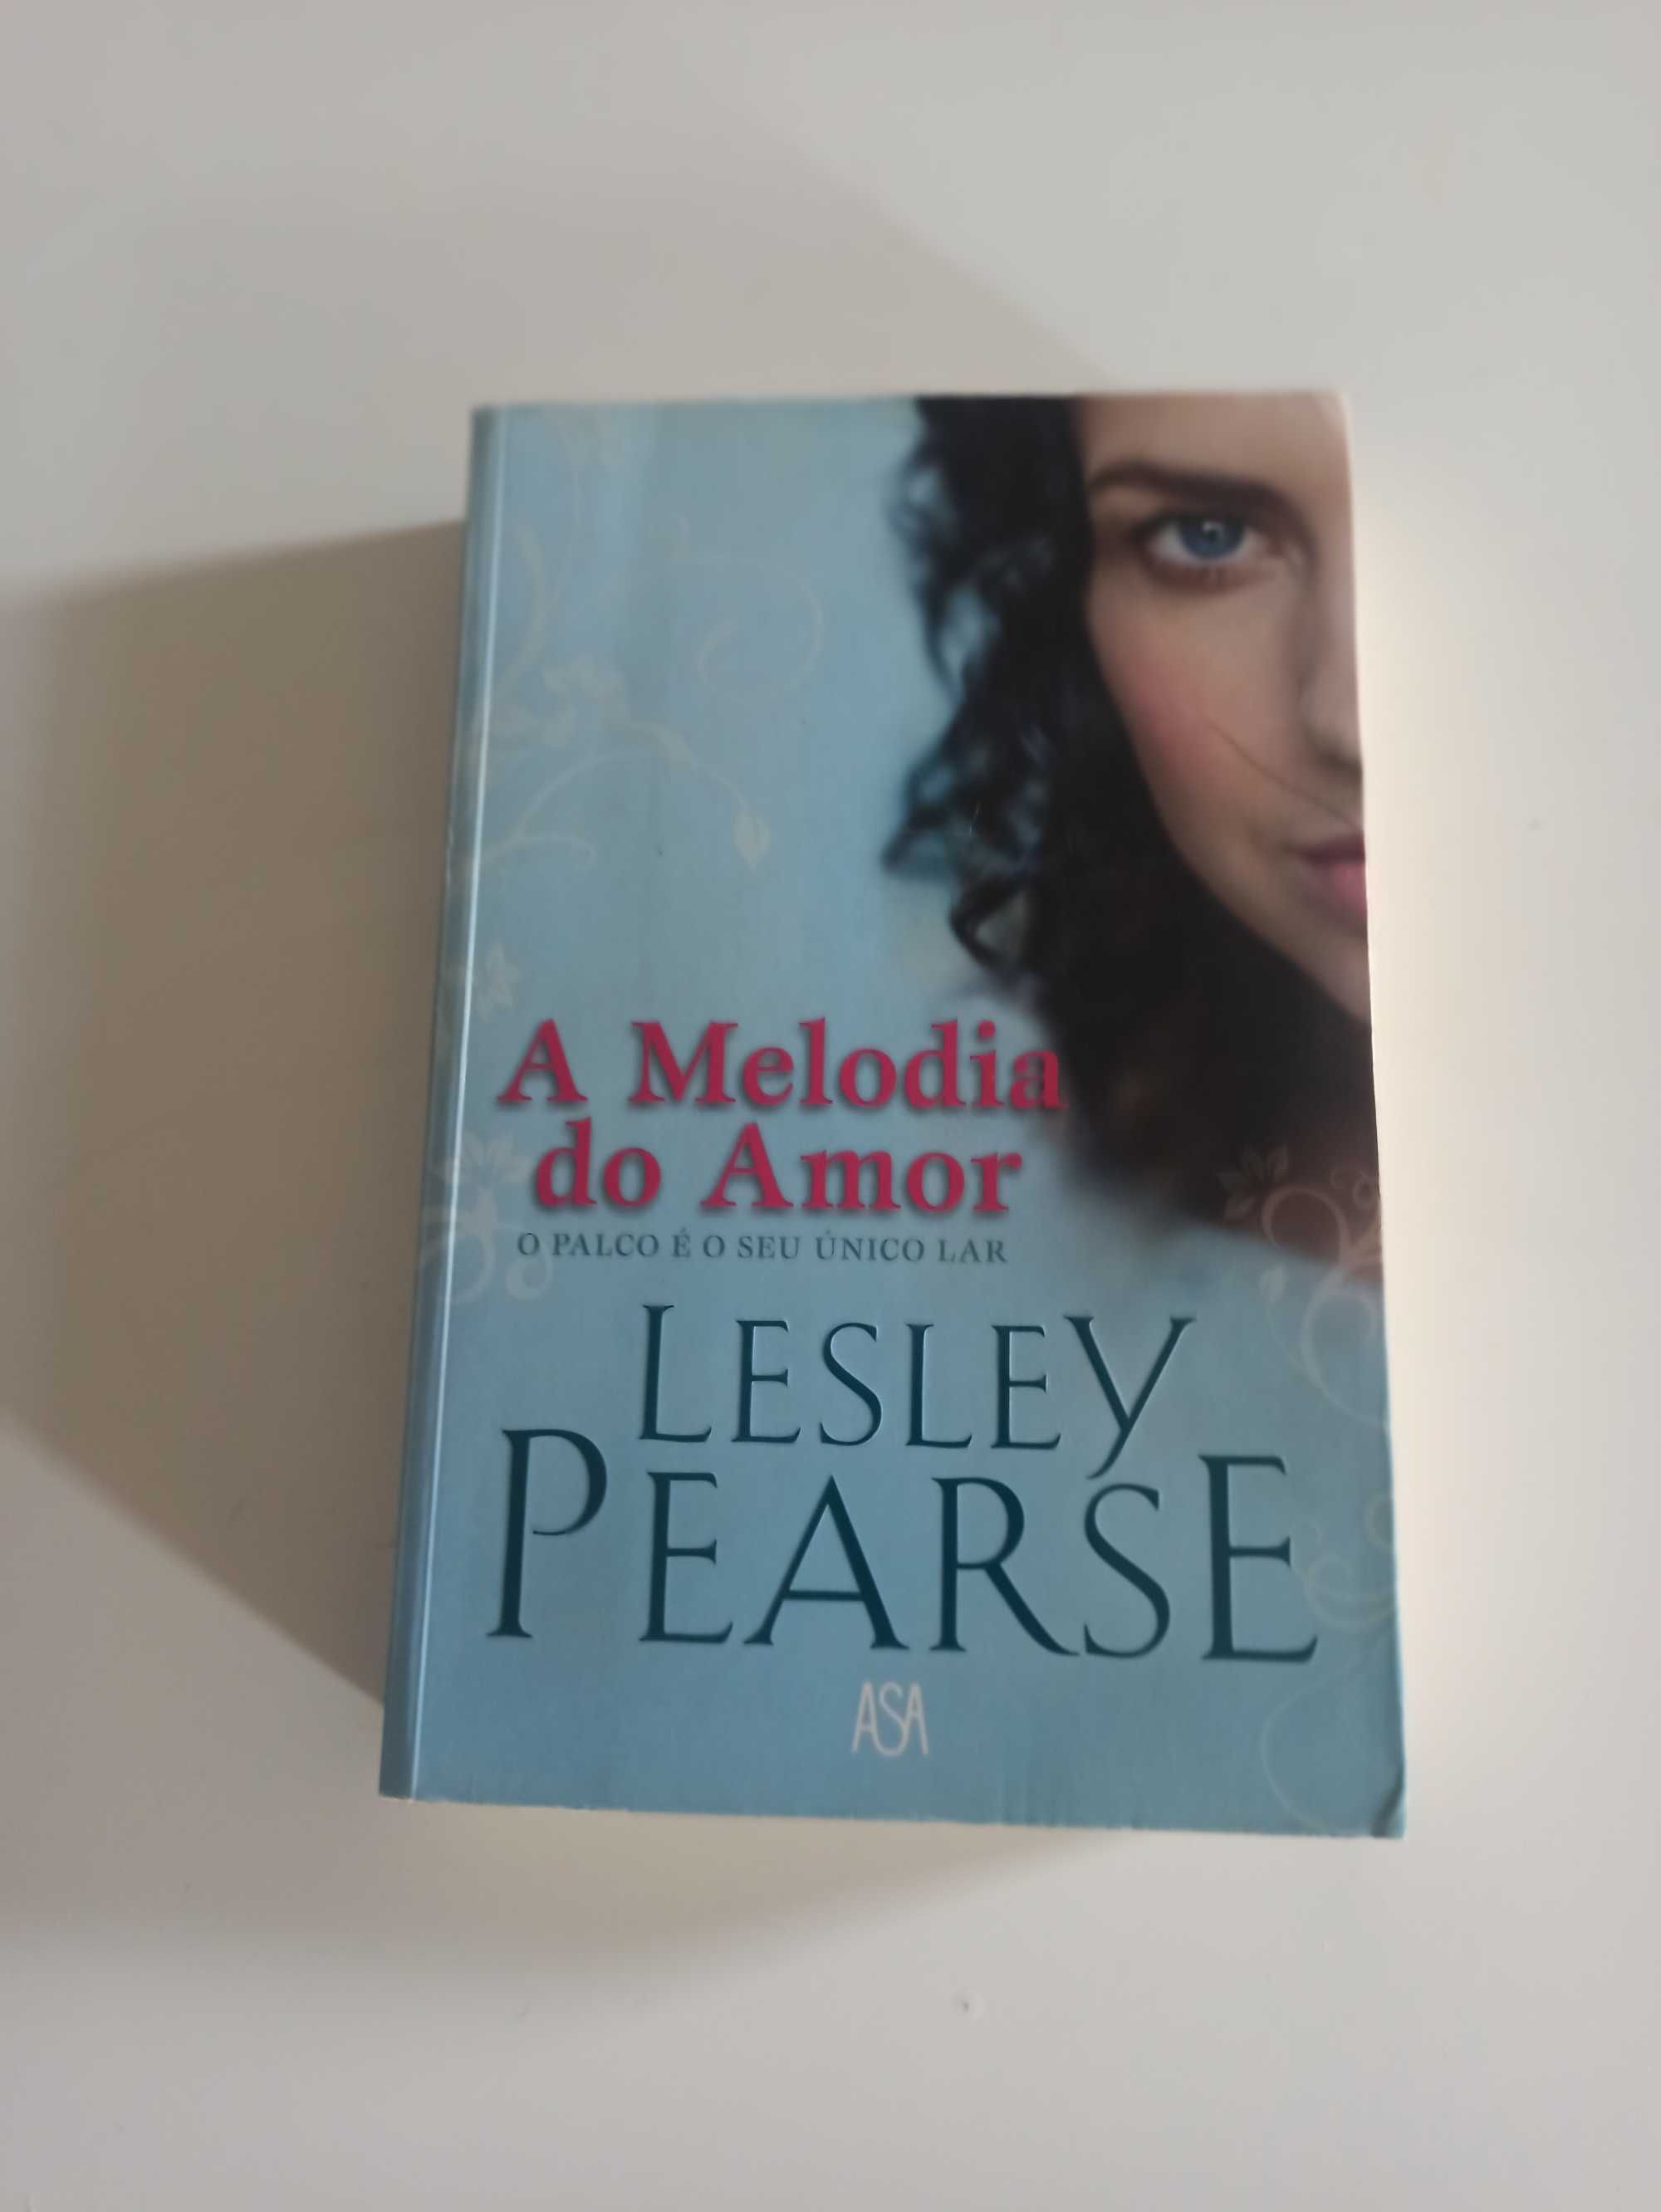 Livro de Romance "A Melodia do Amor" de Lesley Pearce (520 Páginas)